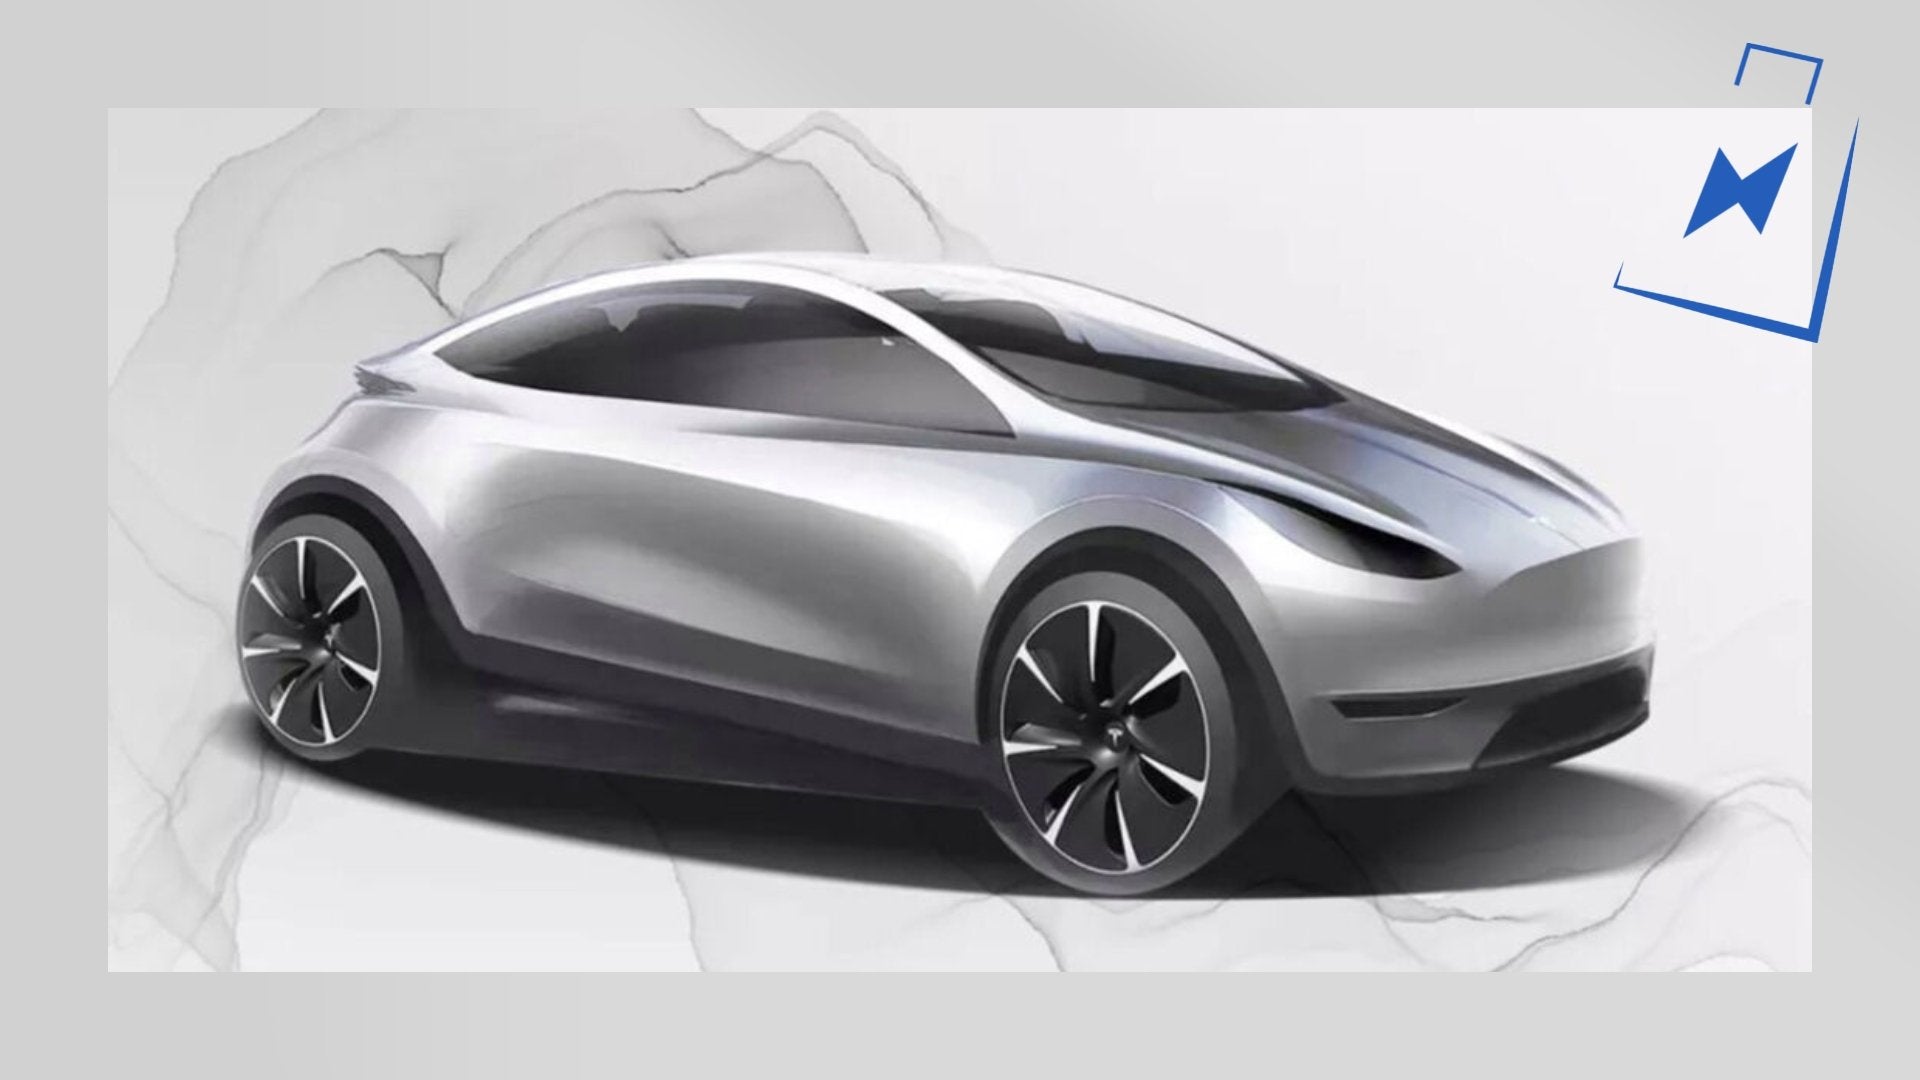 Neue Aussagen von Elon Musk zum neuen kompakten Tesla Modell. Wann können wir damit rechnen? - Shop4Tesla